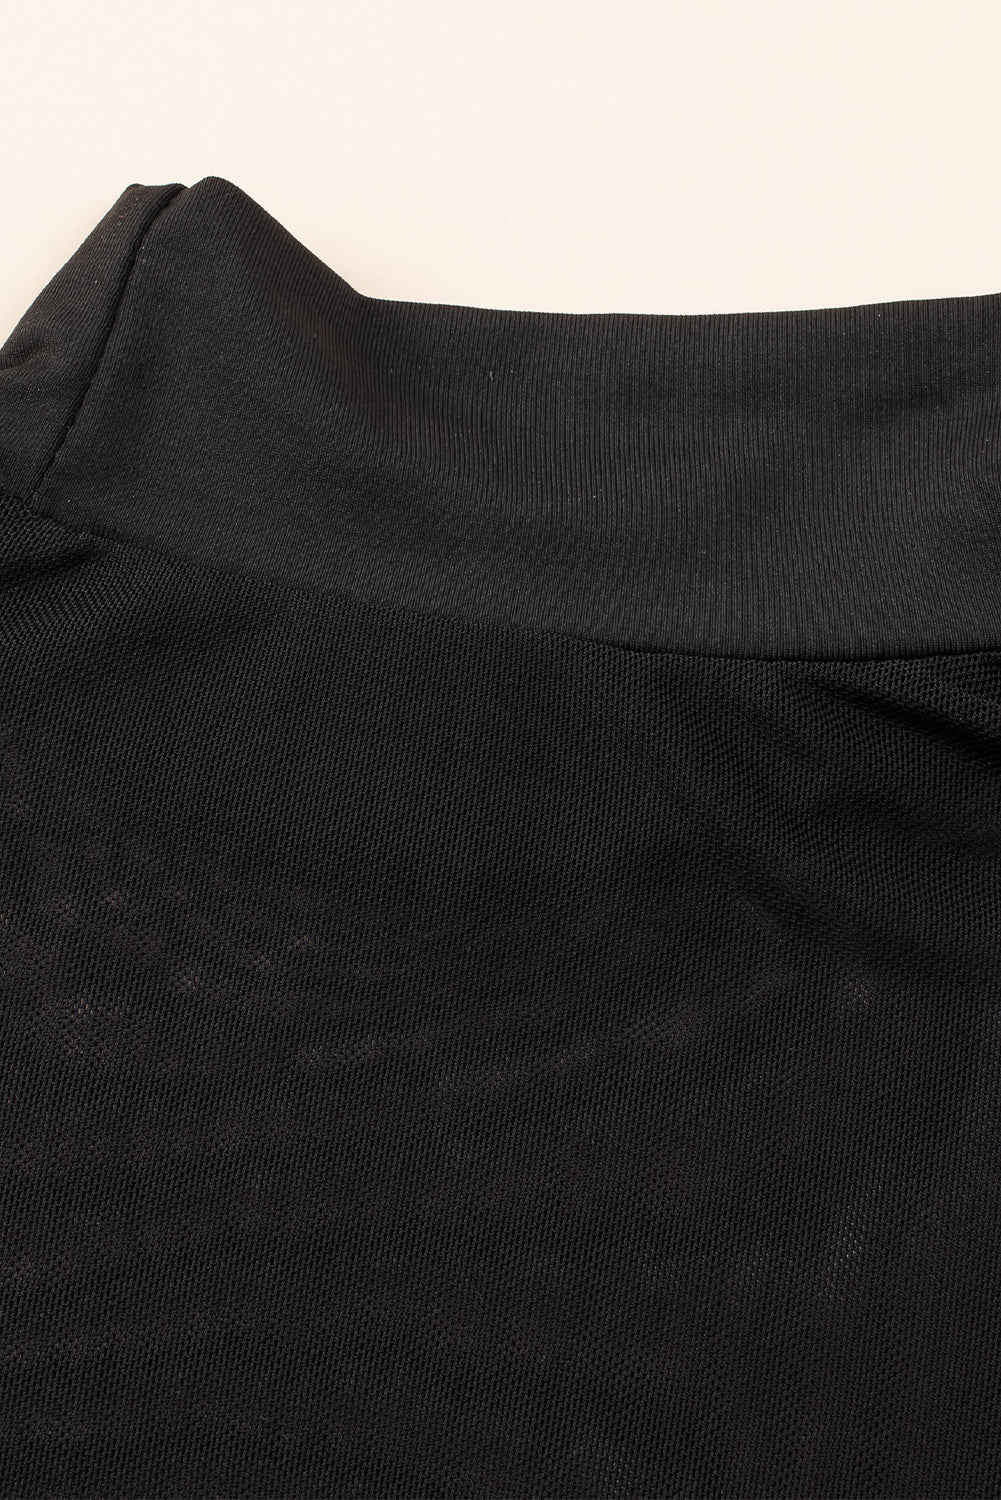 Crna mrežasta majica dugih rukava s visokim ovratnikom i naborima